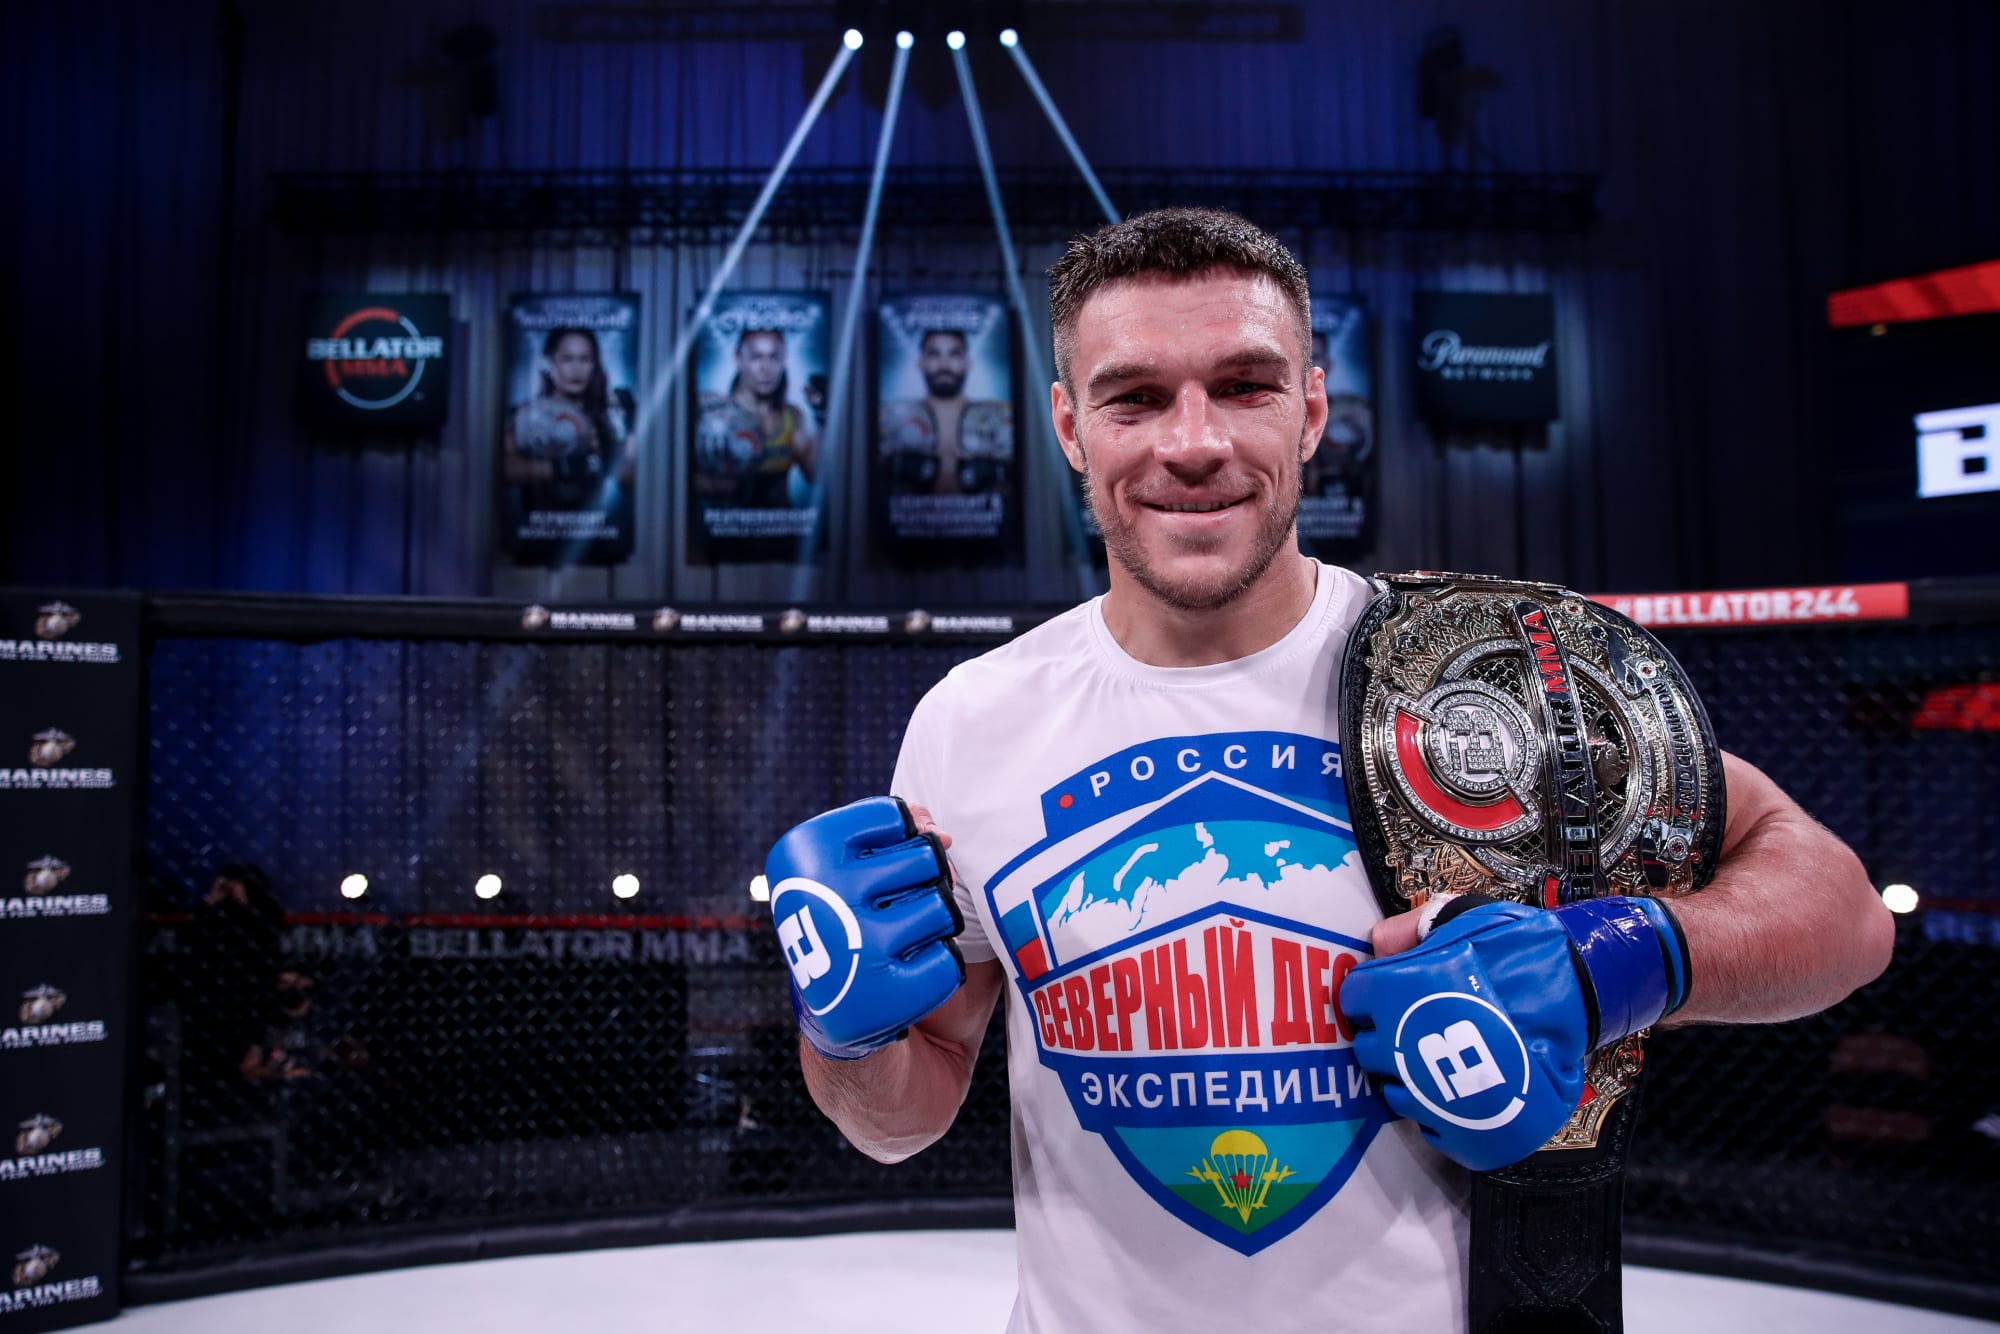 Чемпион Bellator Вадим Немков планирует перейти в UFC. Какие шансы у ученика Федора в лучшей лиге мира